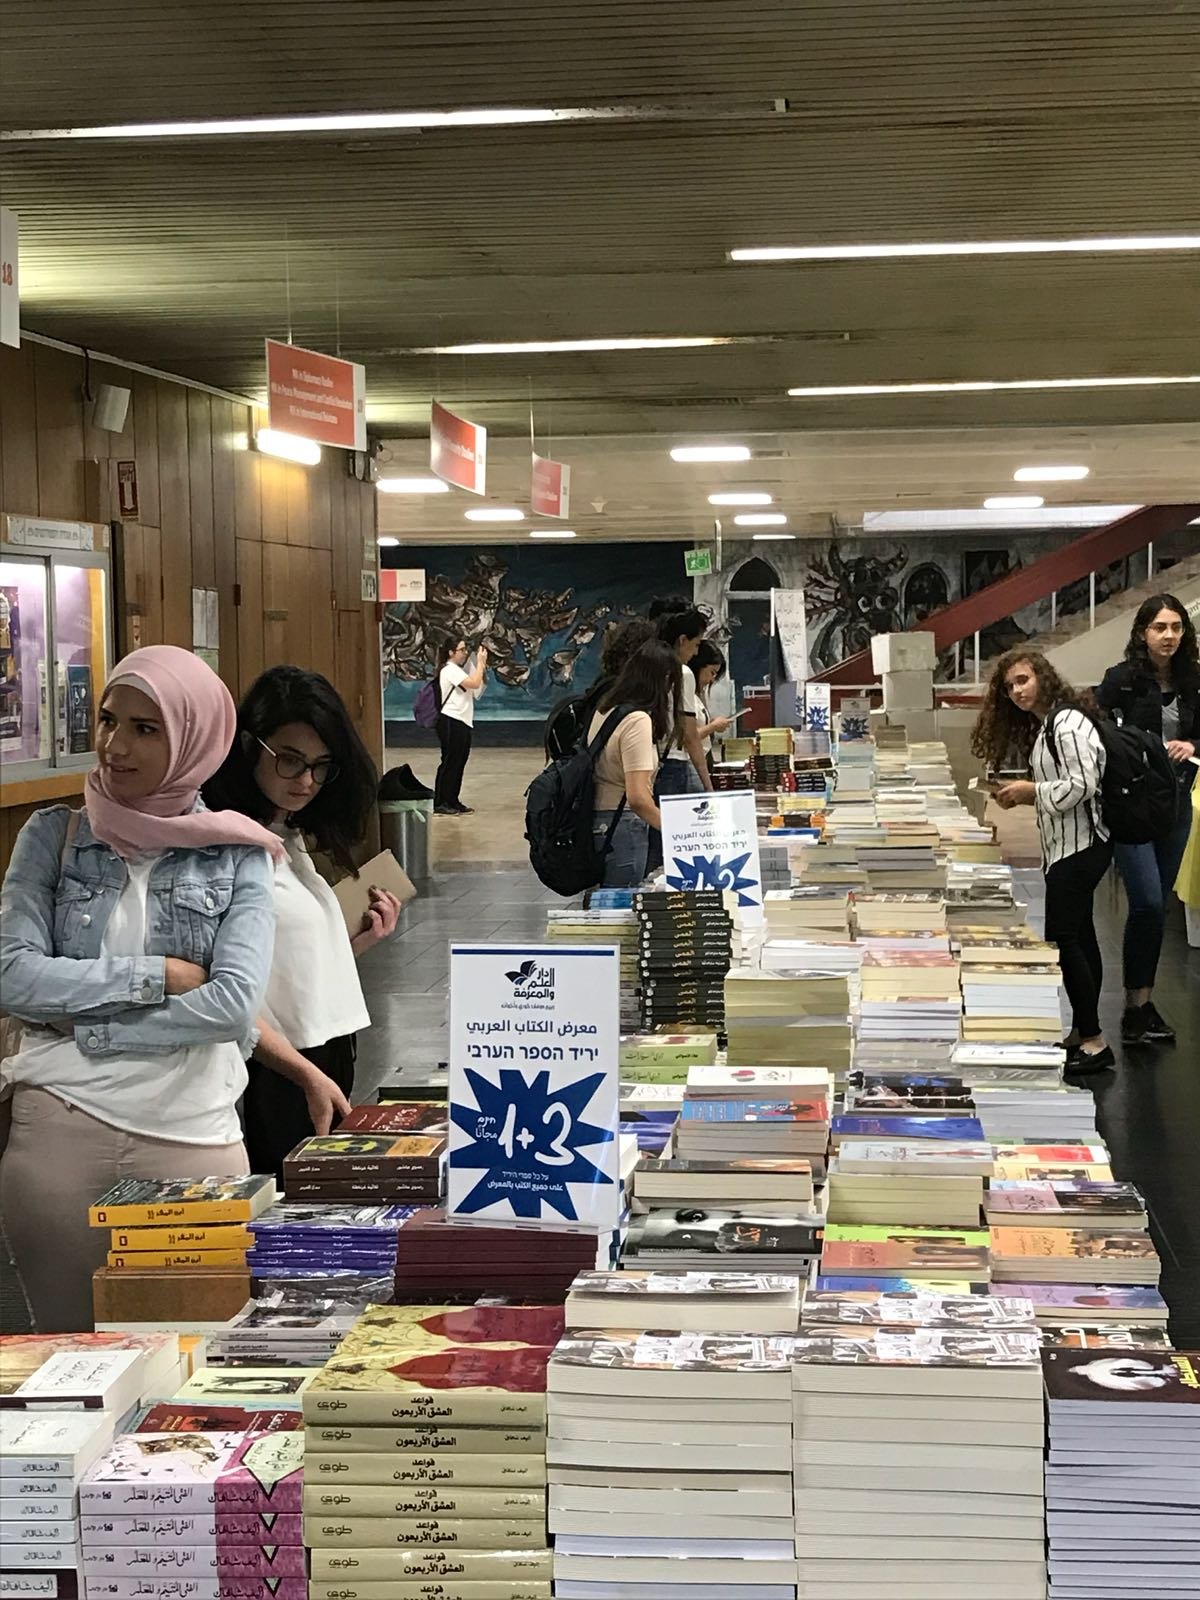 النجاح الكبير والضخم لمعرض الكتاب المقام في جامعة حيفا - والمستمر حتى 10.05.2018-2